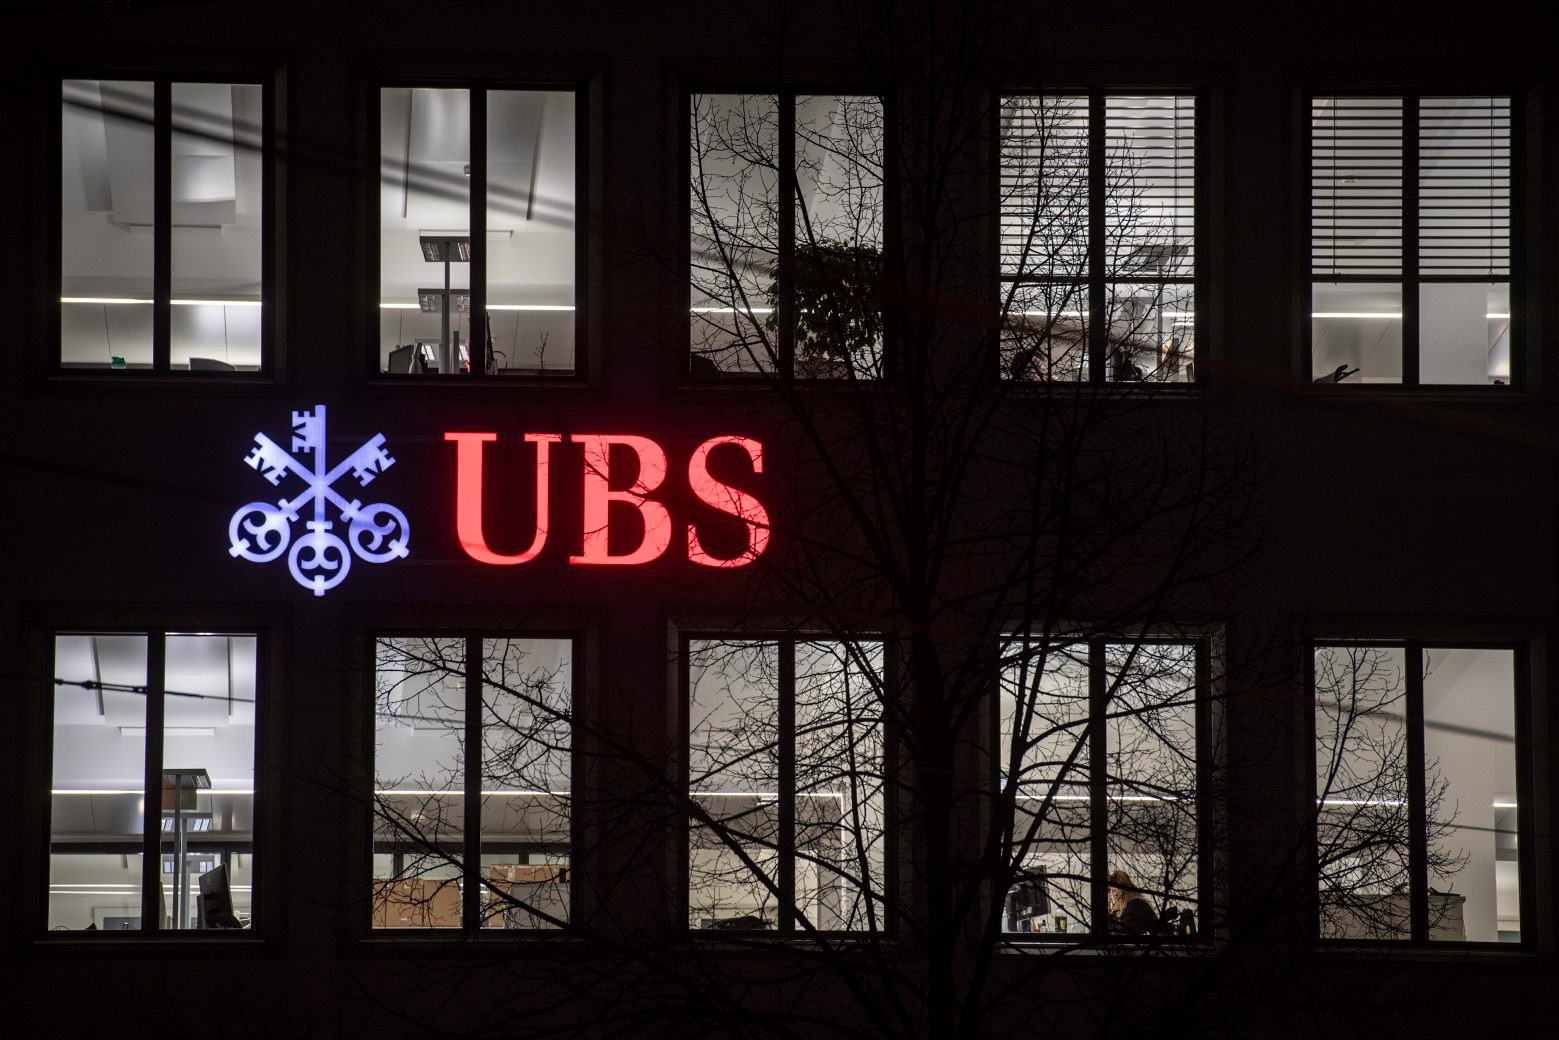 ARCHIVBILD ZU DEN QUARTALSZAHLEN DER UBS, AM DIENSTAG, 22. JANUAR 2019 ---- Das Logo der Bank UBS leuchtet am Montag, 21. Januar 2019 in Zuerich. (KEYSTONE/Ennio Leanza) SCHWEIZ UBS